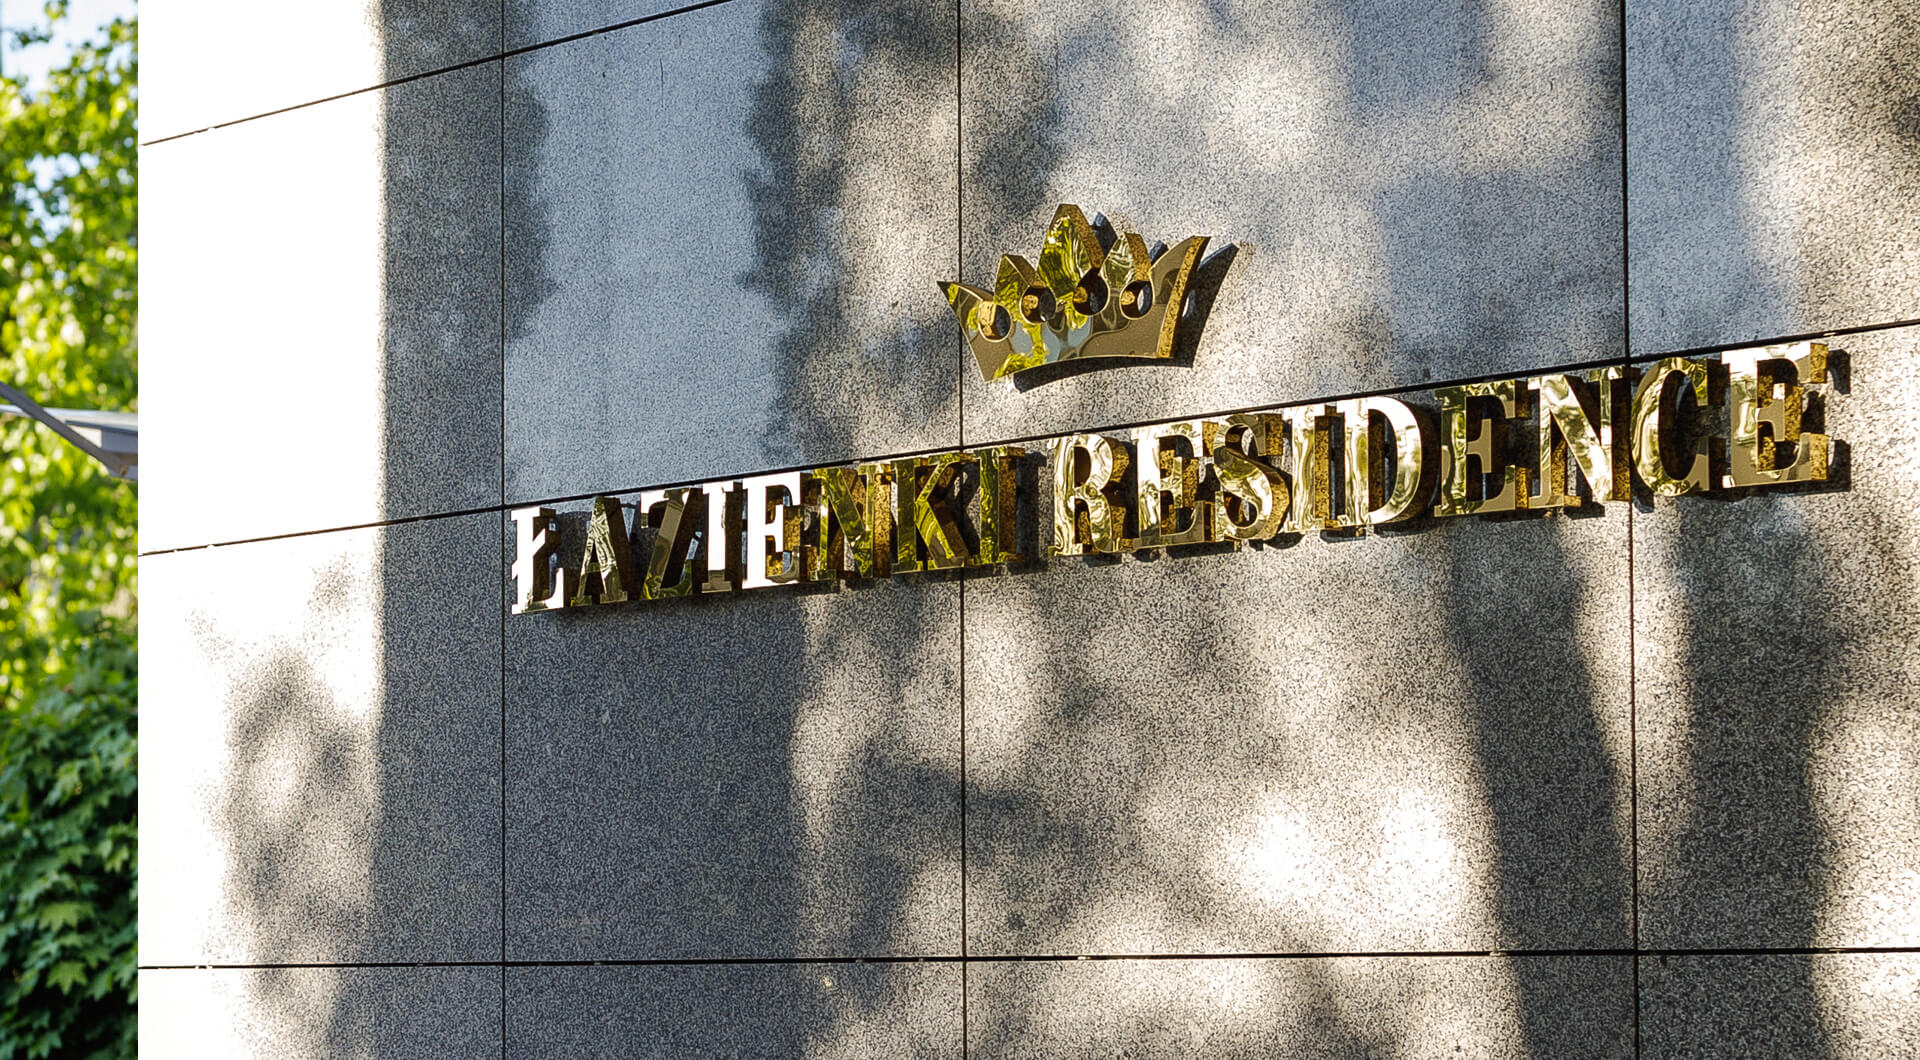 Residencia de Baños - Letras de la Residencia del Baño en acero inoxidable de color dorado, con una corona en el logotipo.